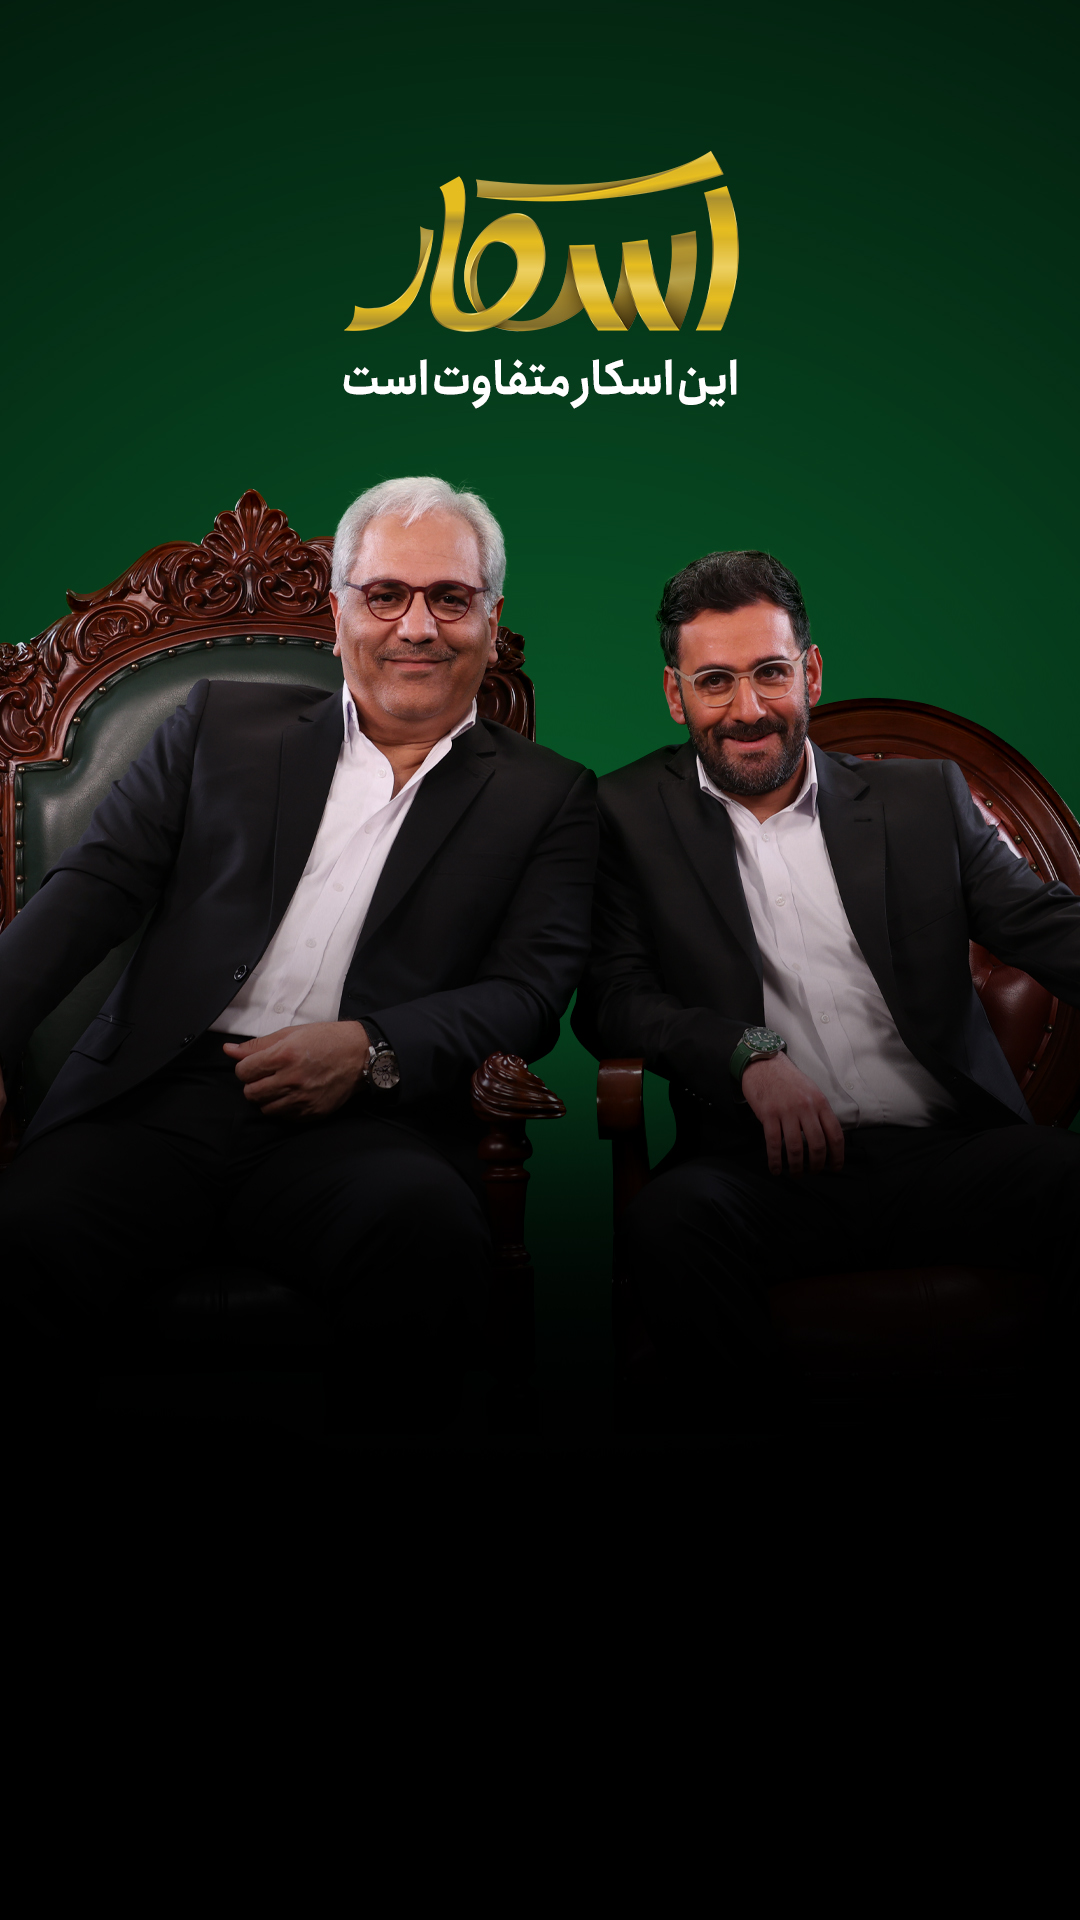 مهران مدیری و نیما شعبانژاد بر روی صندلی‌های برنامه رئالیتی‌شو اسکار نشسته‌اند